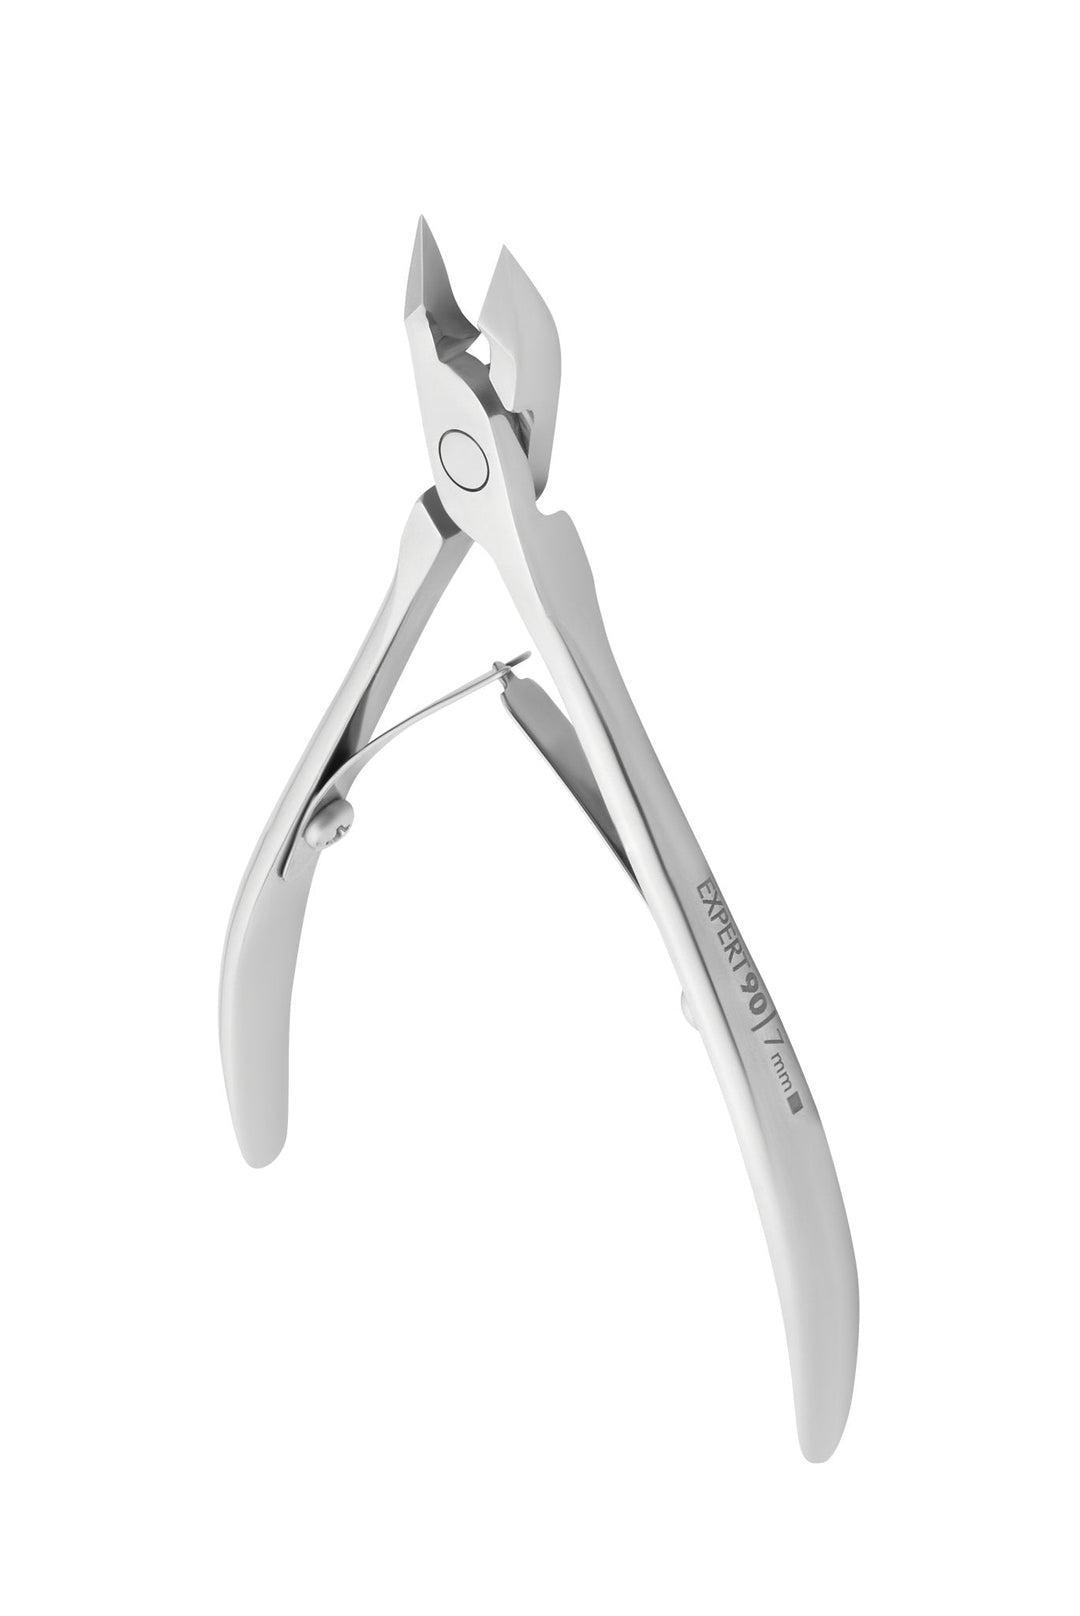 Staleks Cuticle Nipper Expert 90 - 7 mm Jaw | U-tools